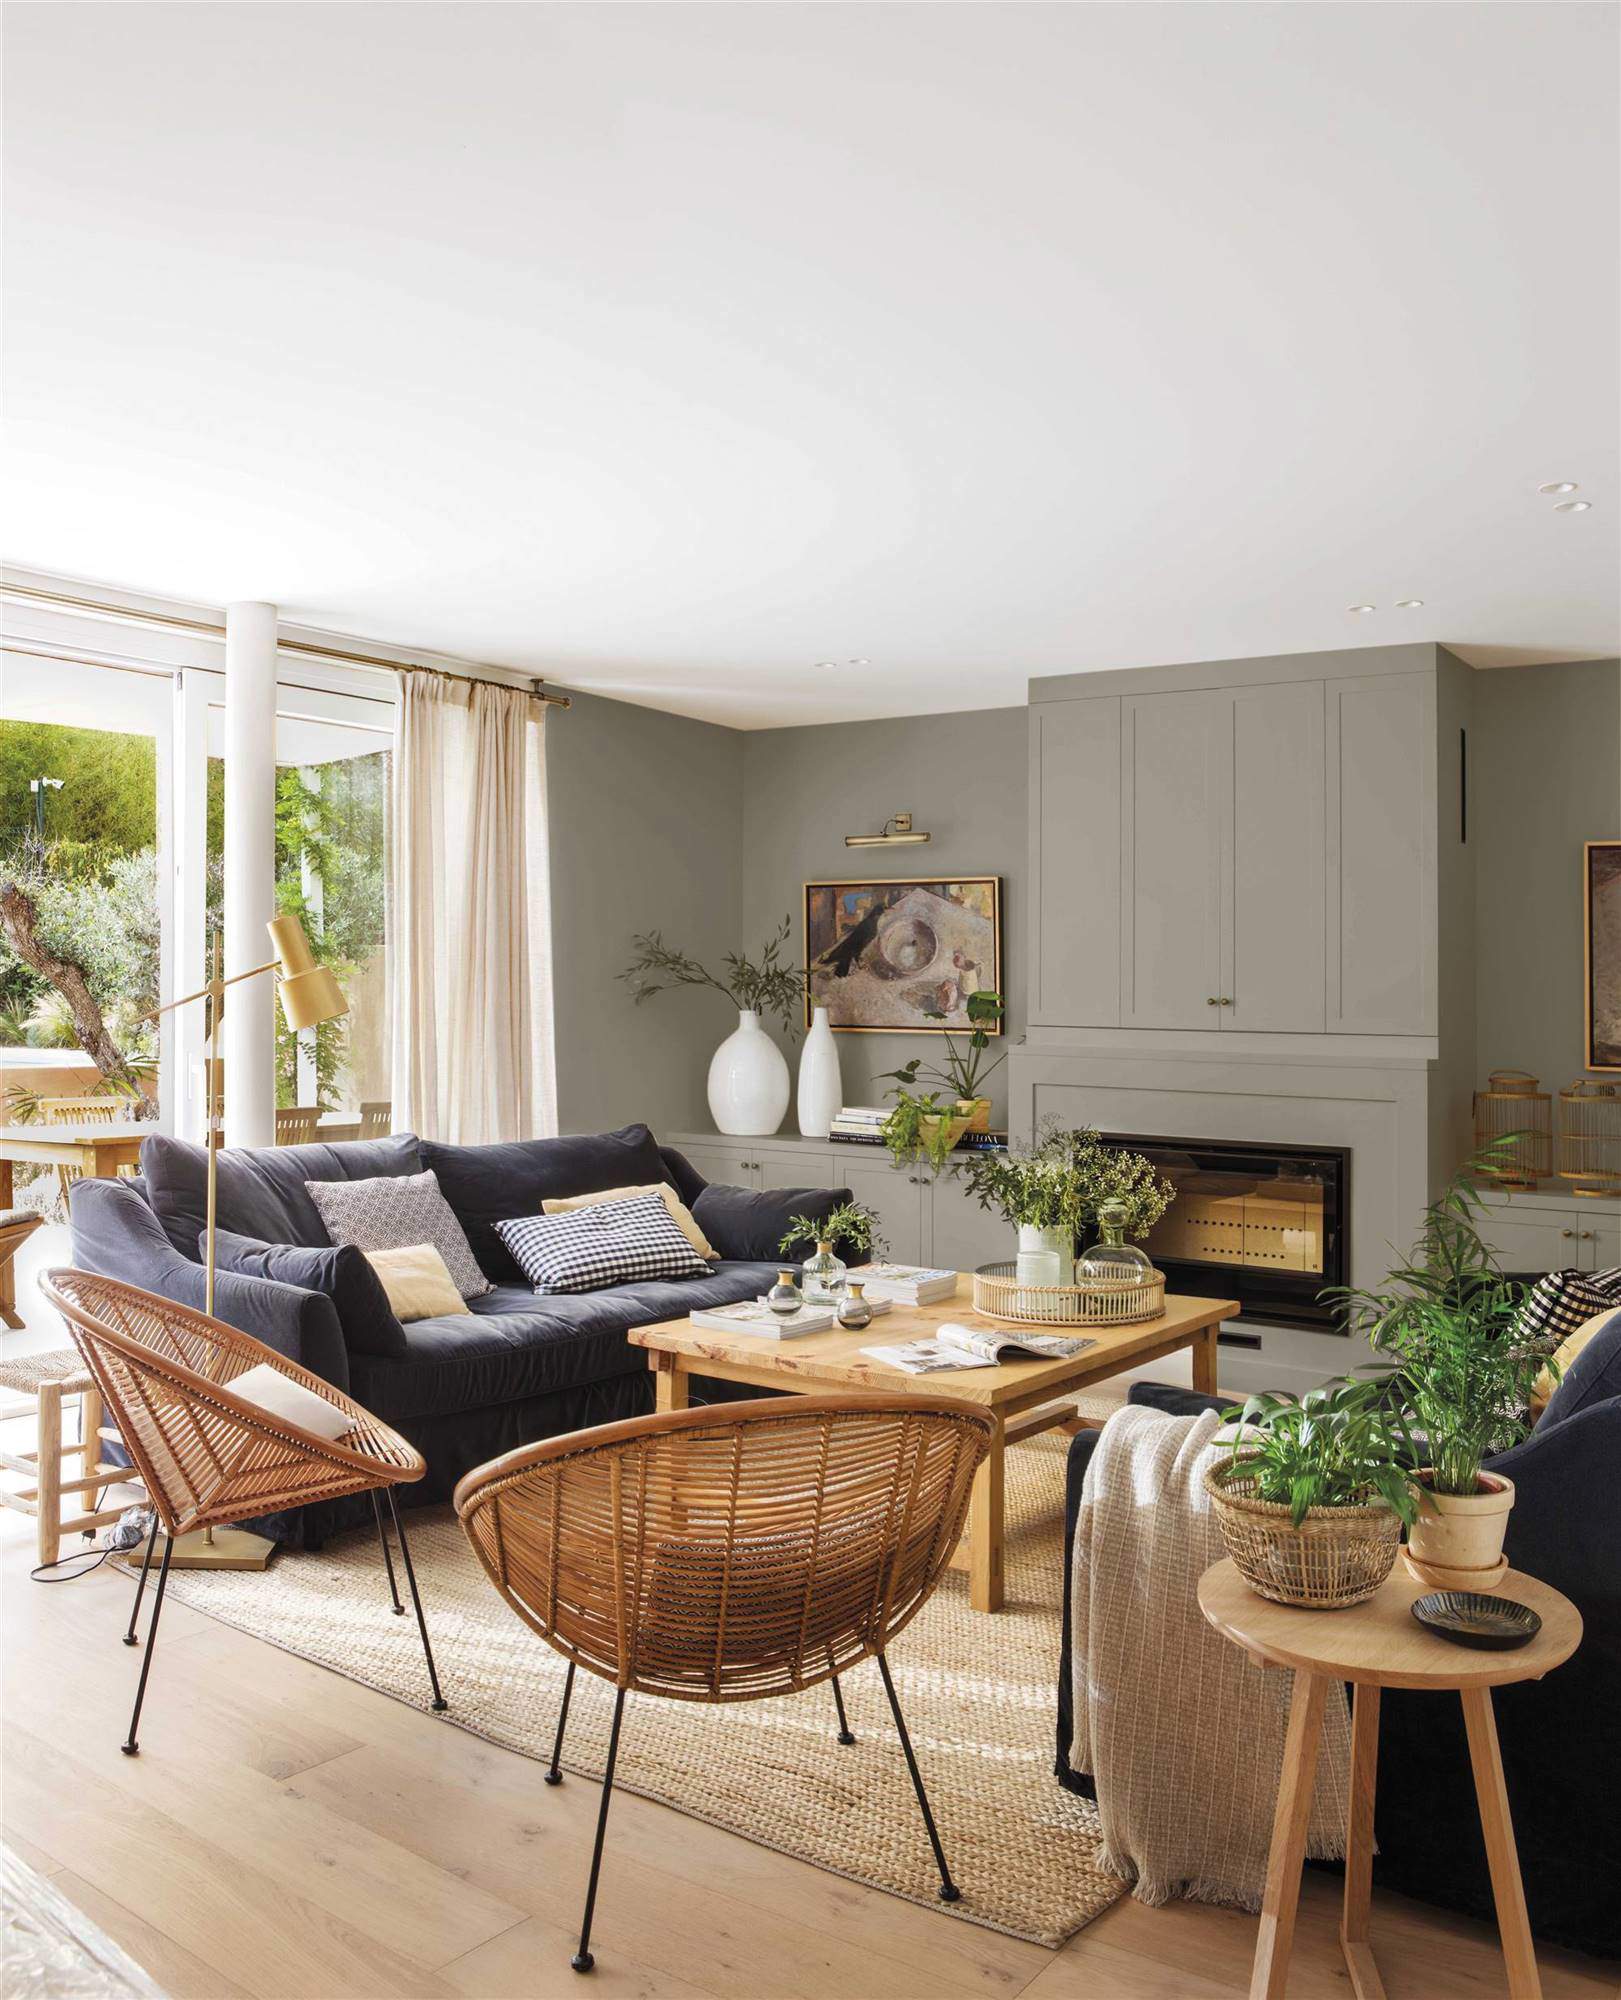 Salón con chimenea y pared principal en gris verdoso, mesa central de madera y sillas en fibras naturales.